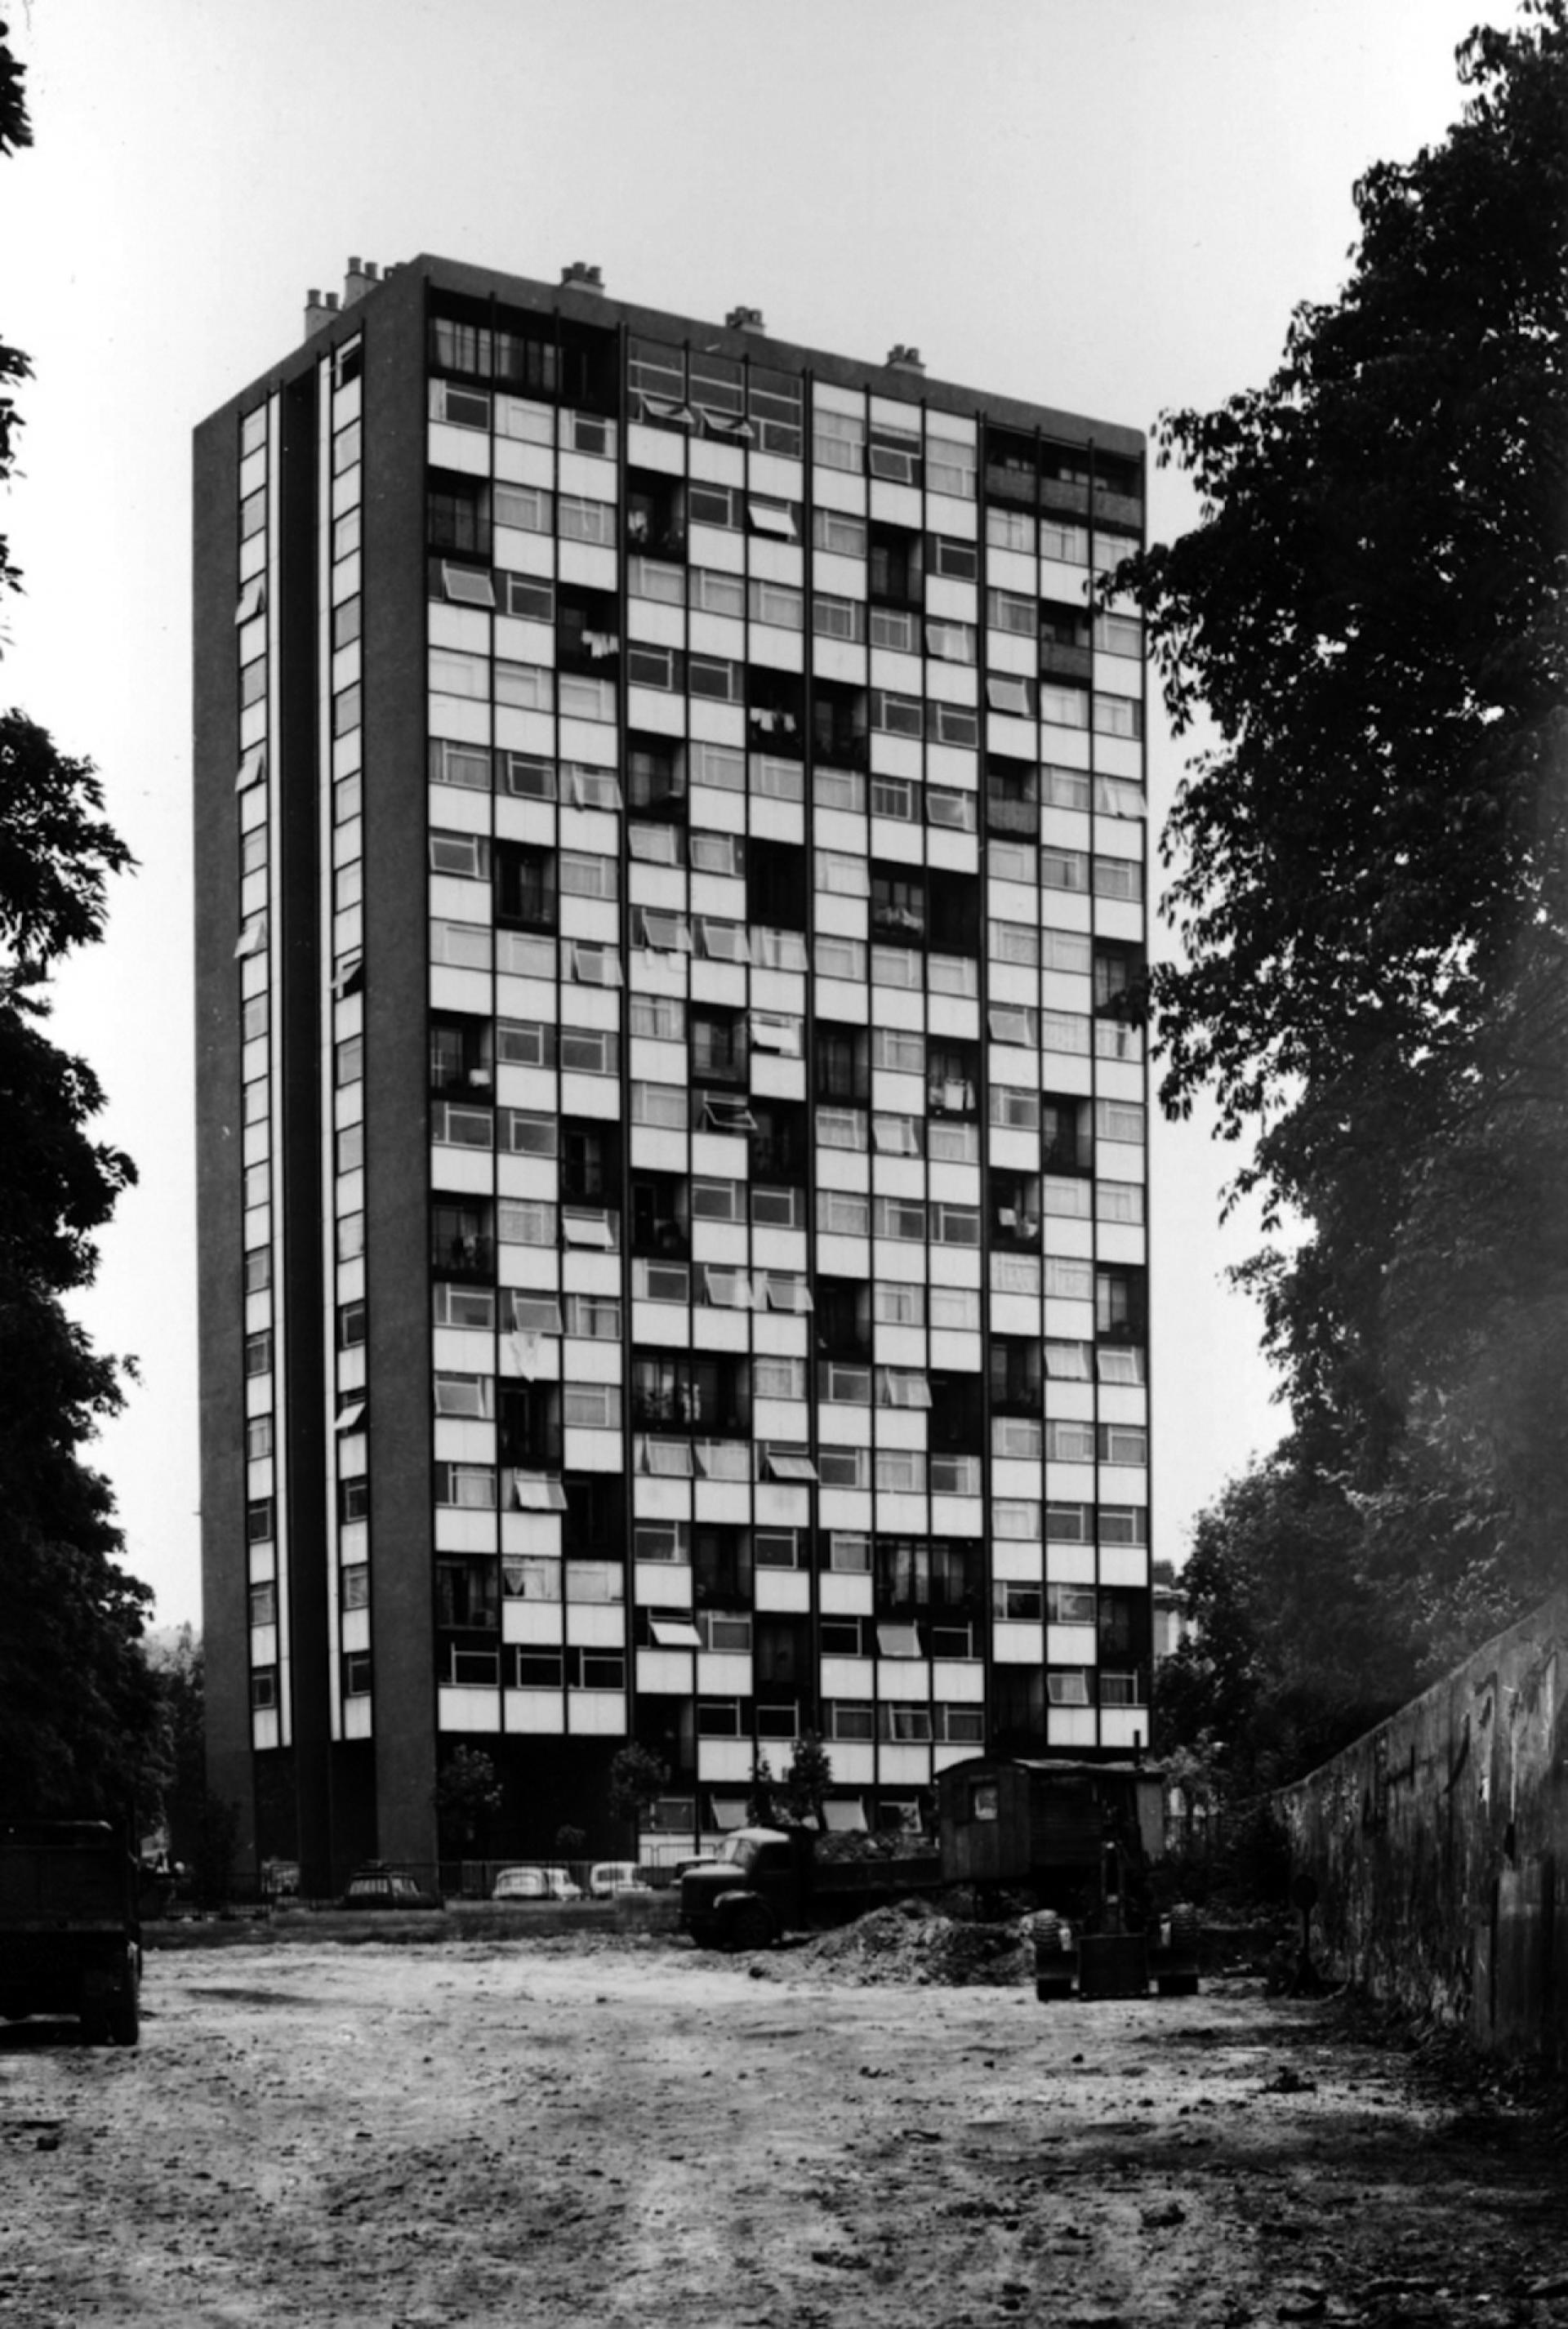 The Bois-Le-Prêtre tower in 1959. | Photo via Philippe Ruault, Frédéric Druot